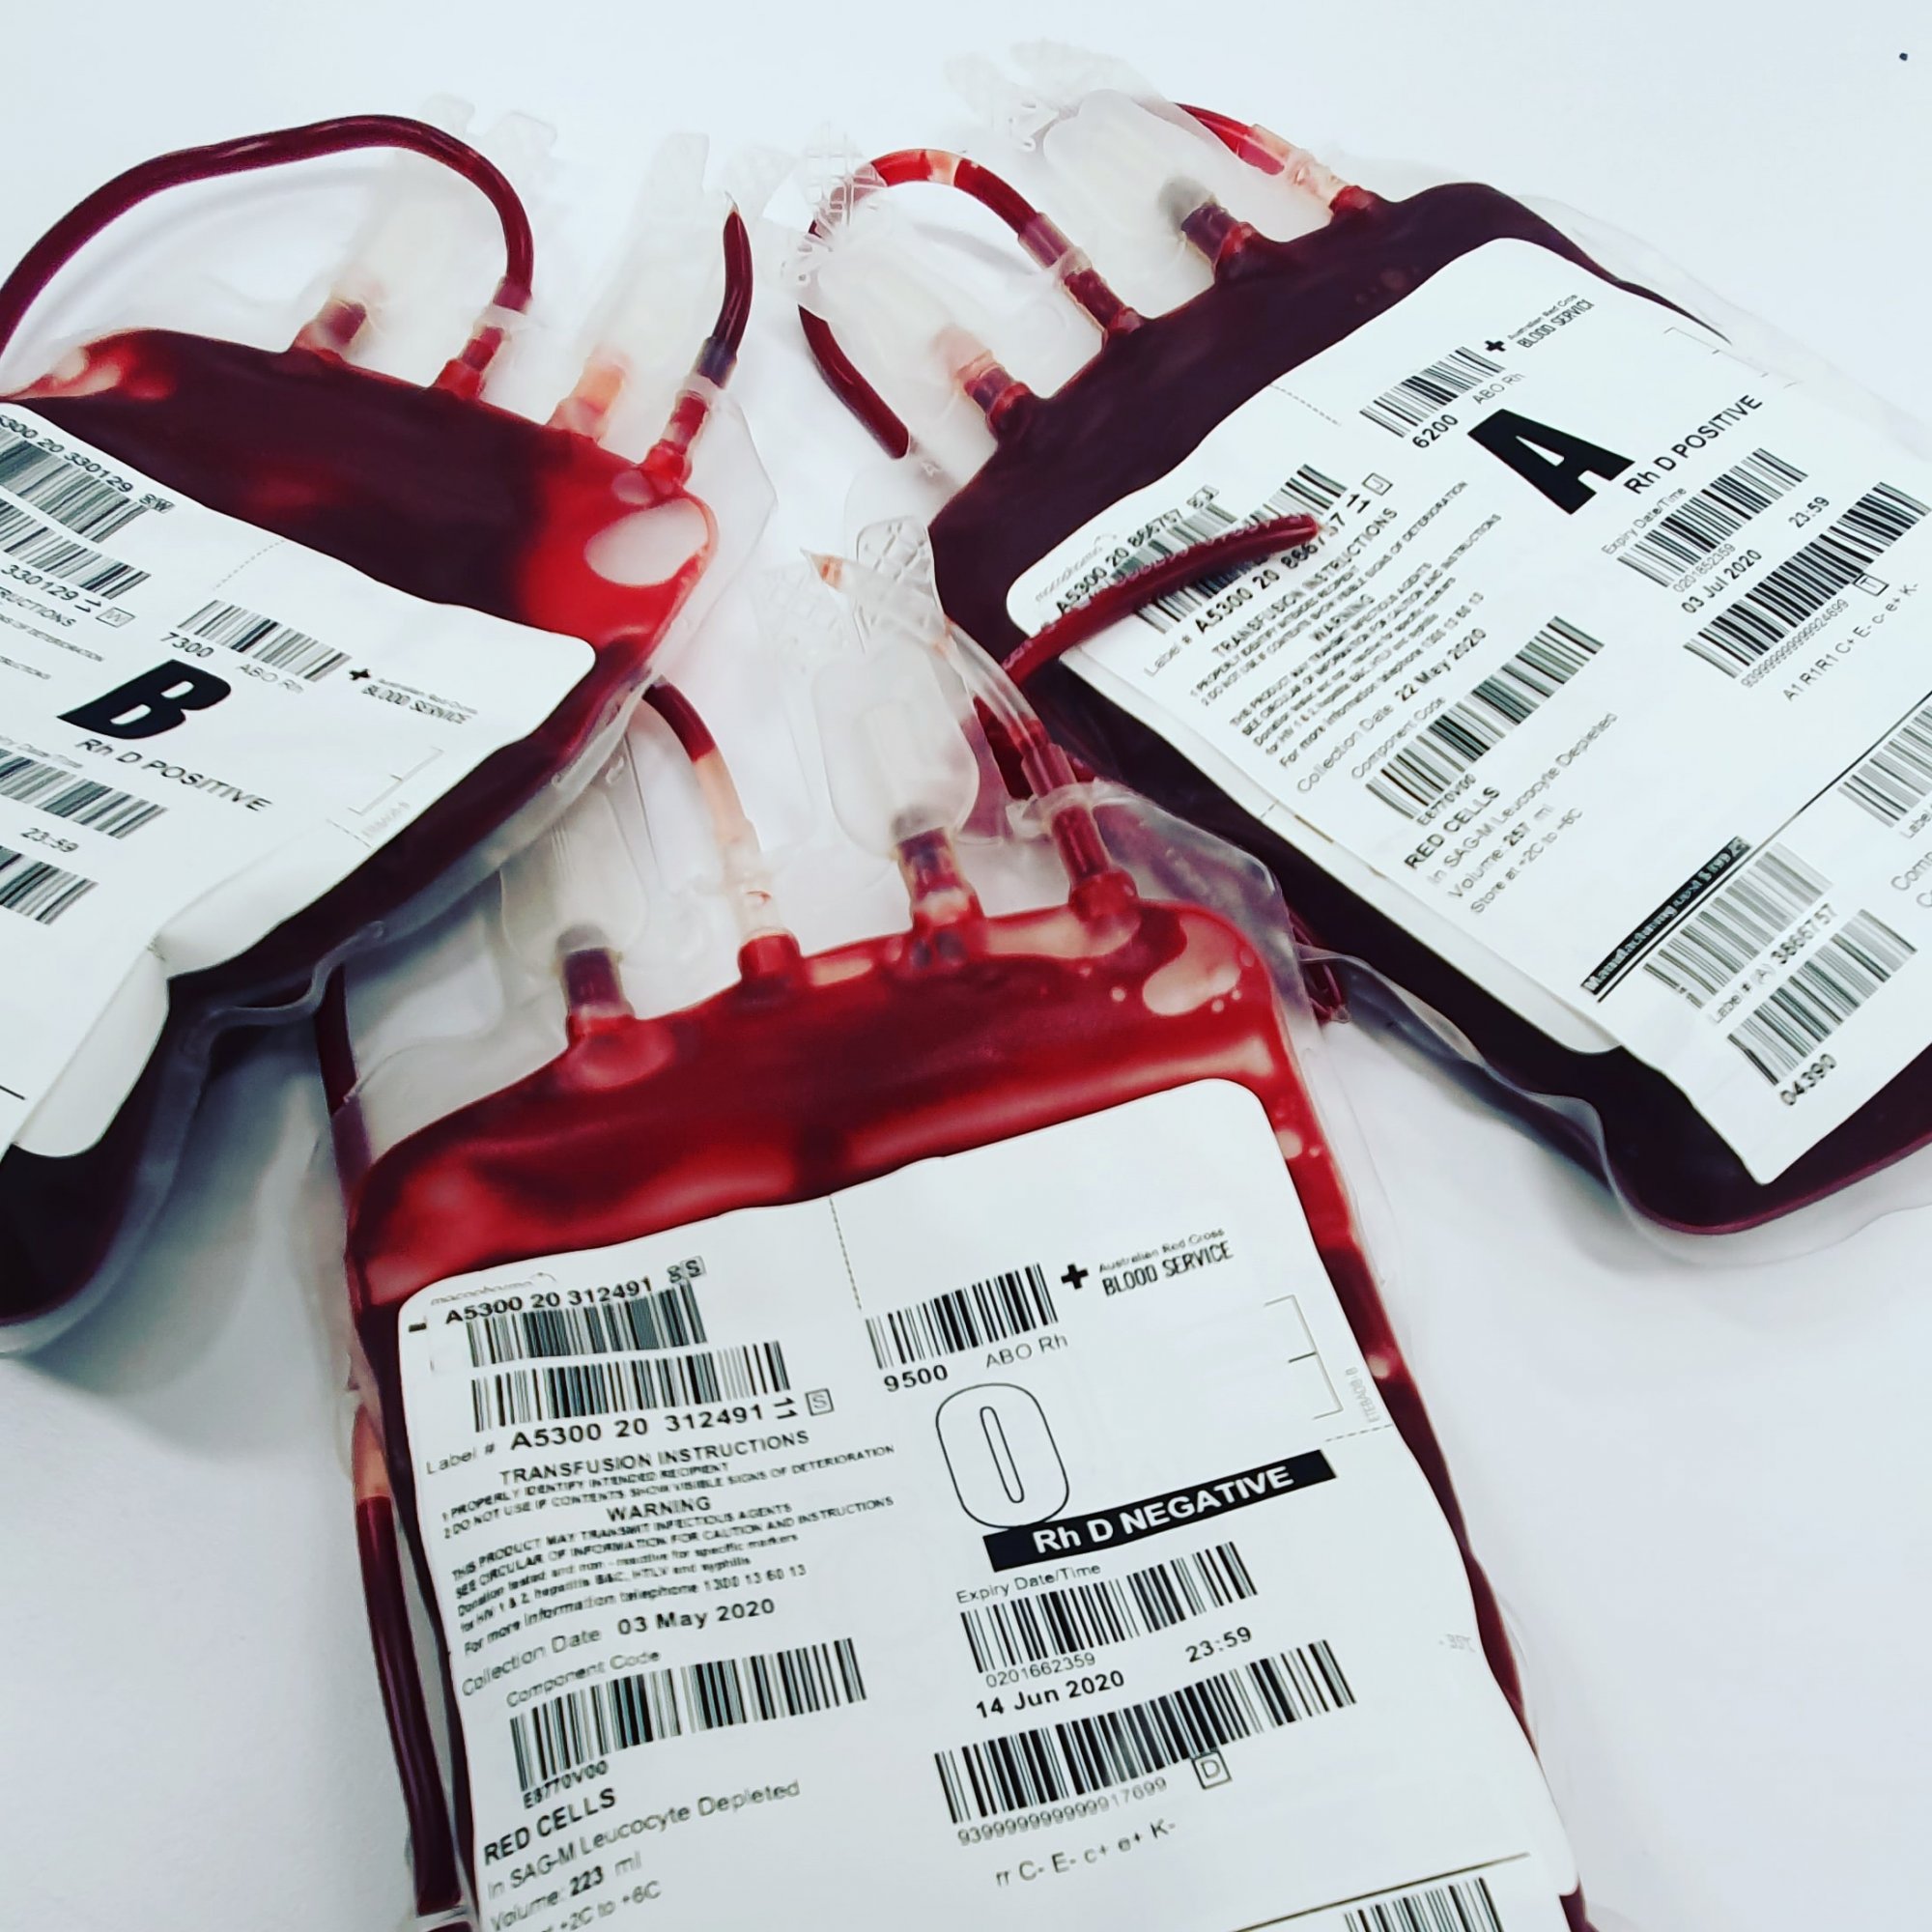 Από εθελοντές αιμοδότες σχεδόν το 70% του αίματος που χρειαζόμαστε